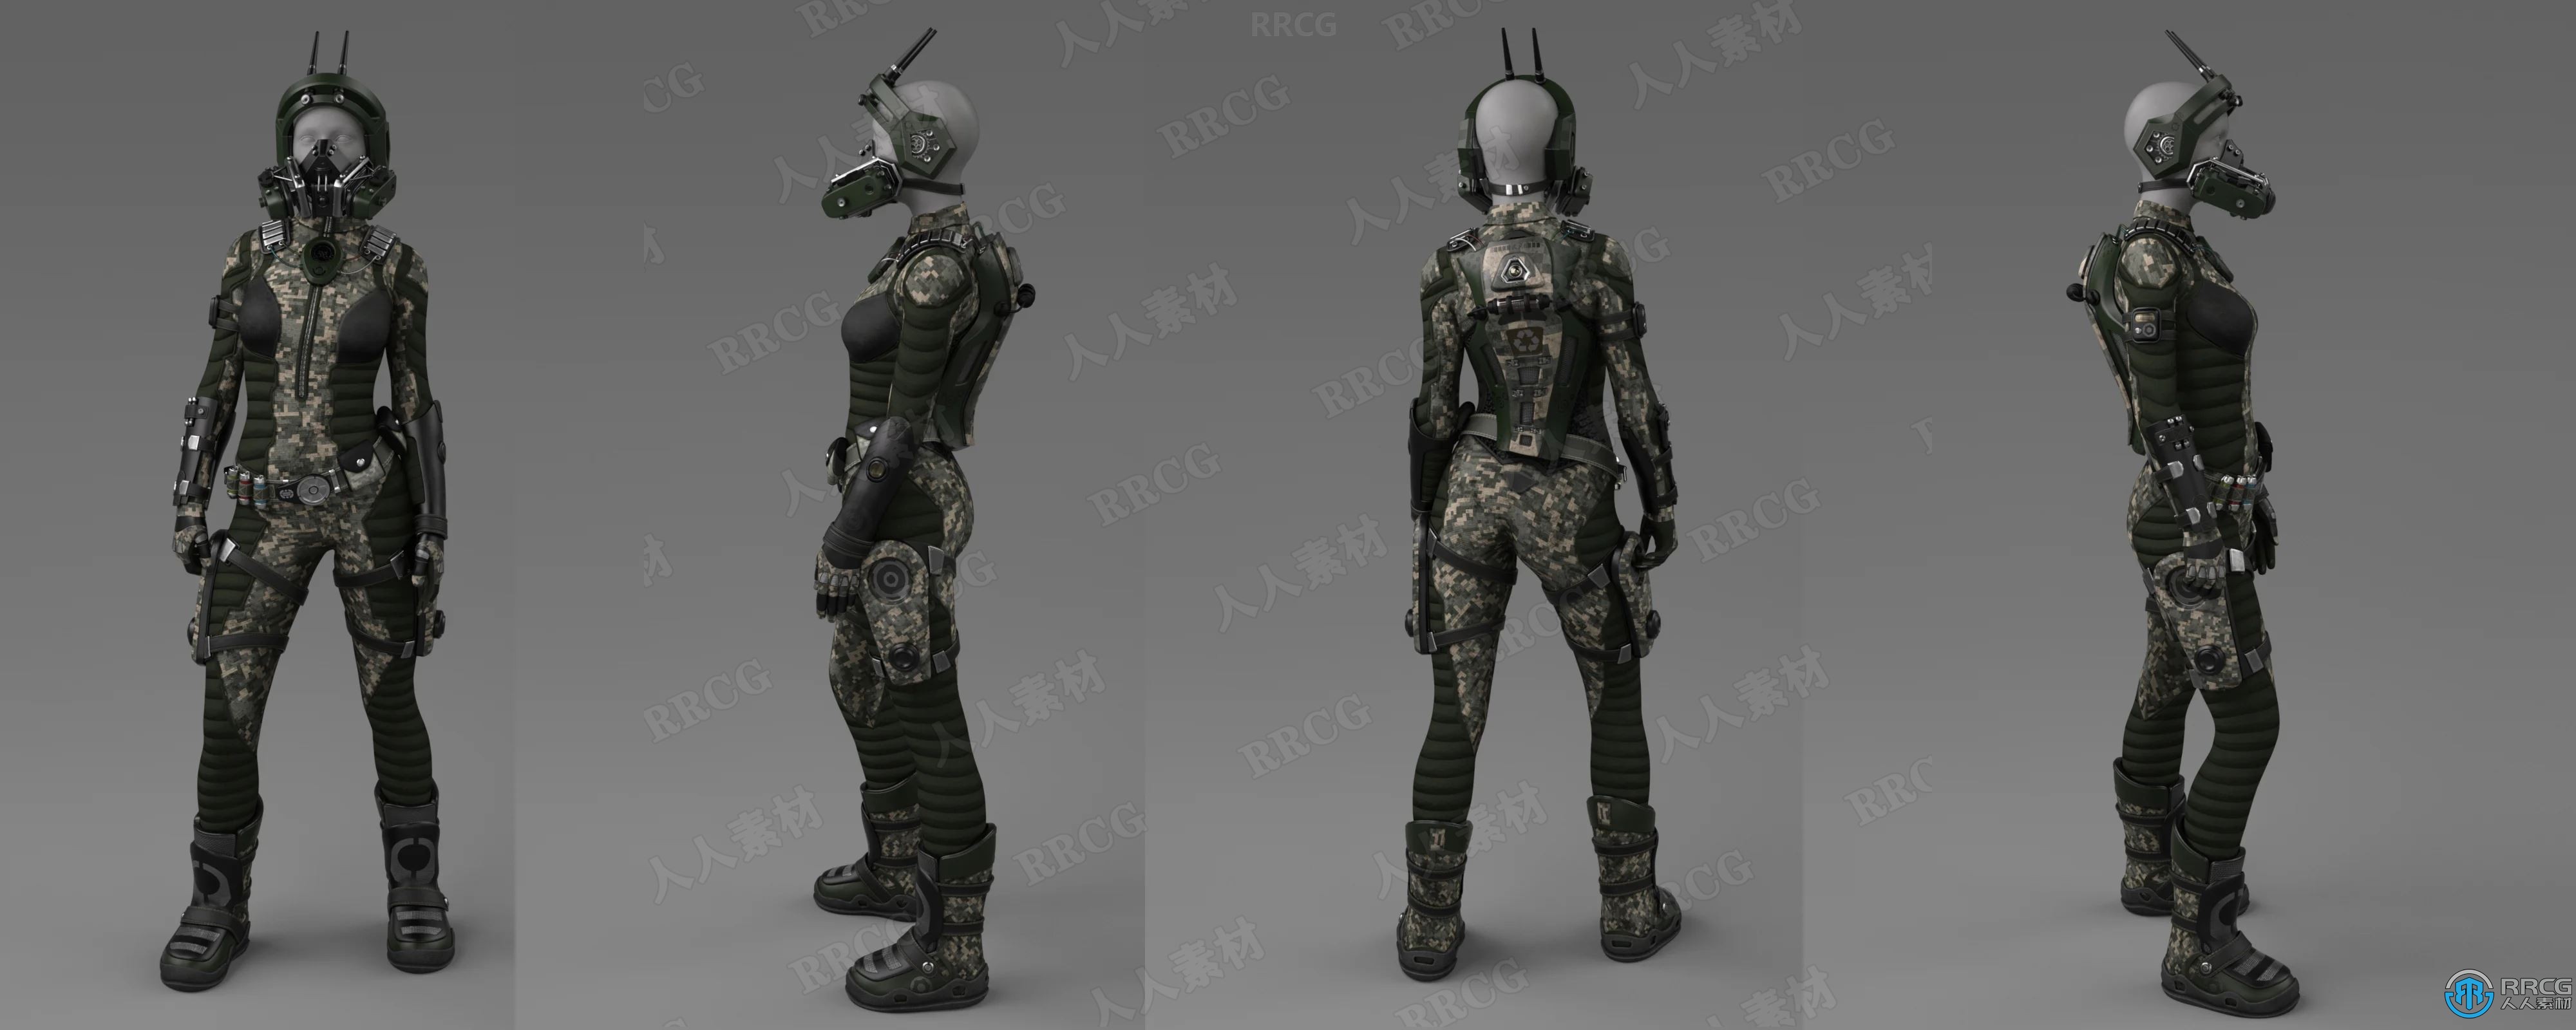 女性机甲装备飞行员角色3D模型合集